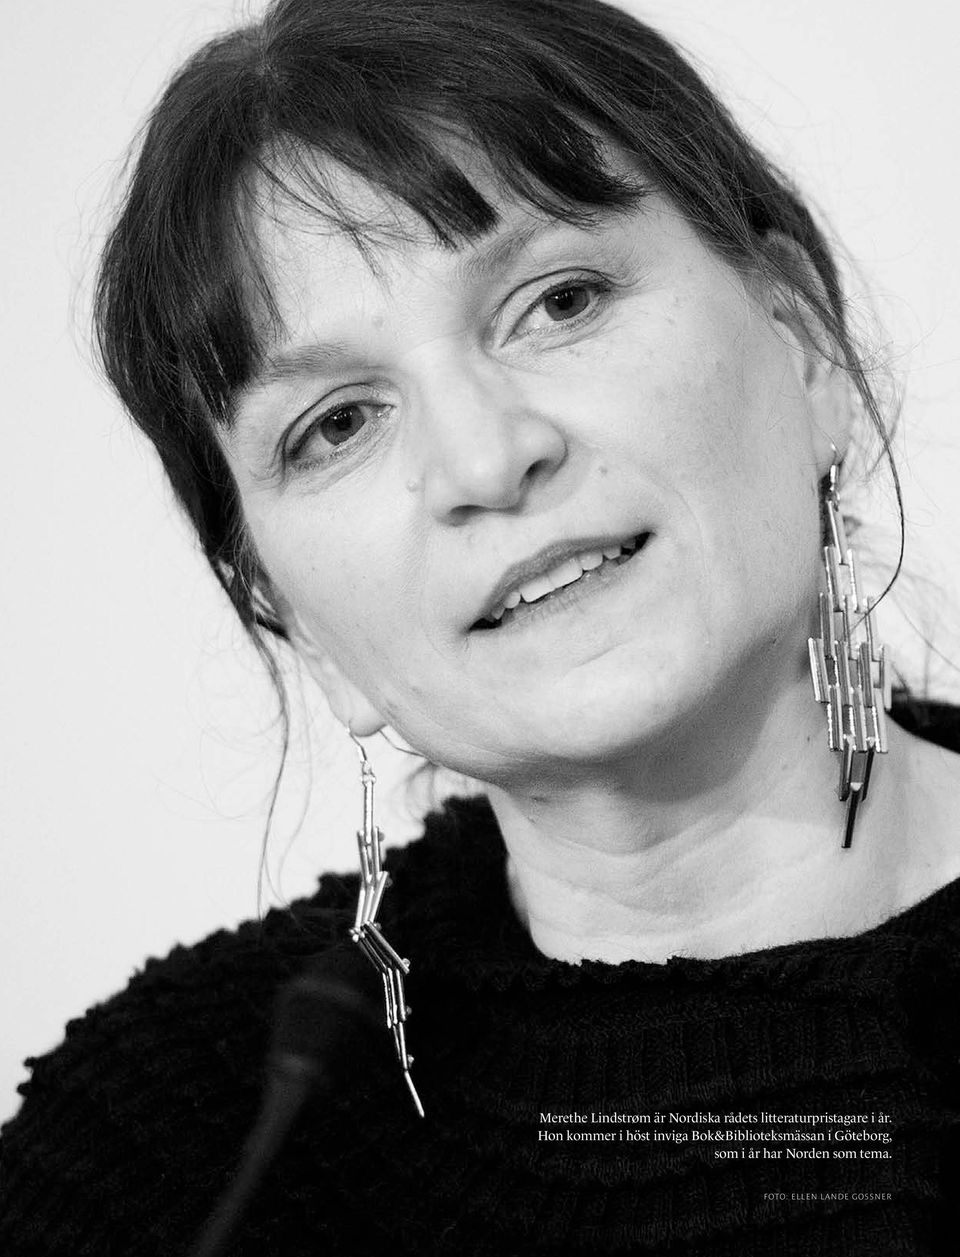 Men trots att hon är kritikerhyllad i Norge, erhöll det prestigefulla Dobloug-priset för sitt författarskap 2008 och nominerats till Nordiska rådets litteraturpris tidigare, är hon inte särskilt känd